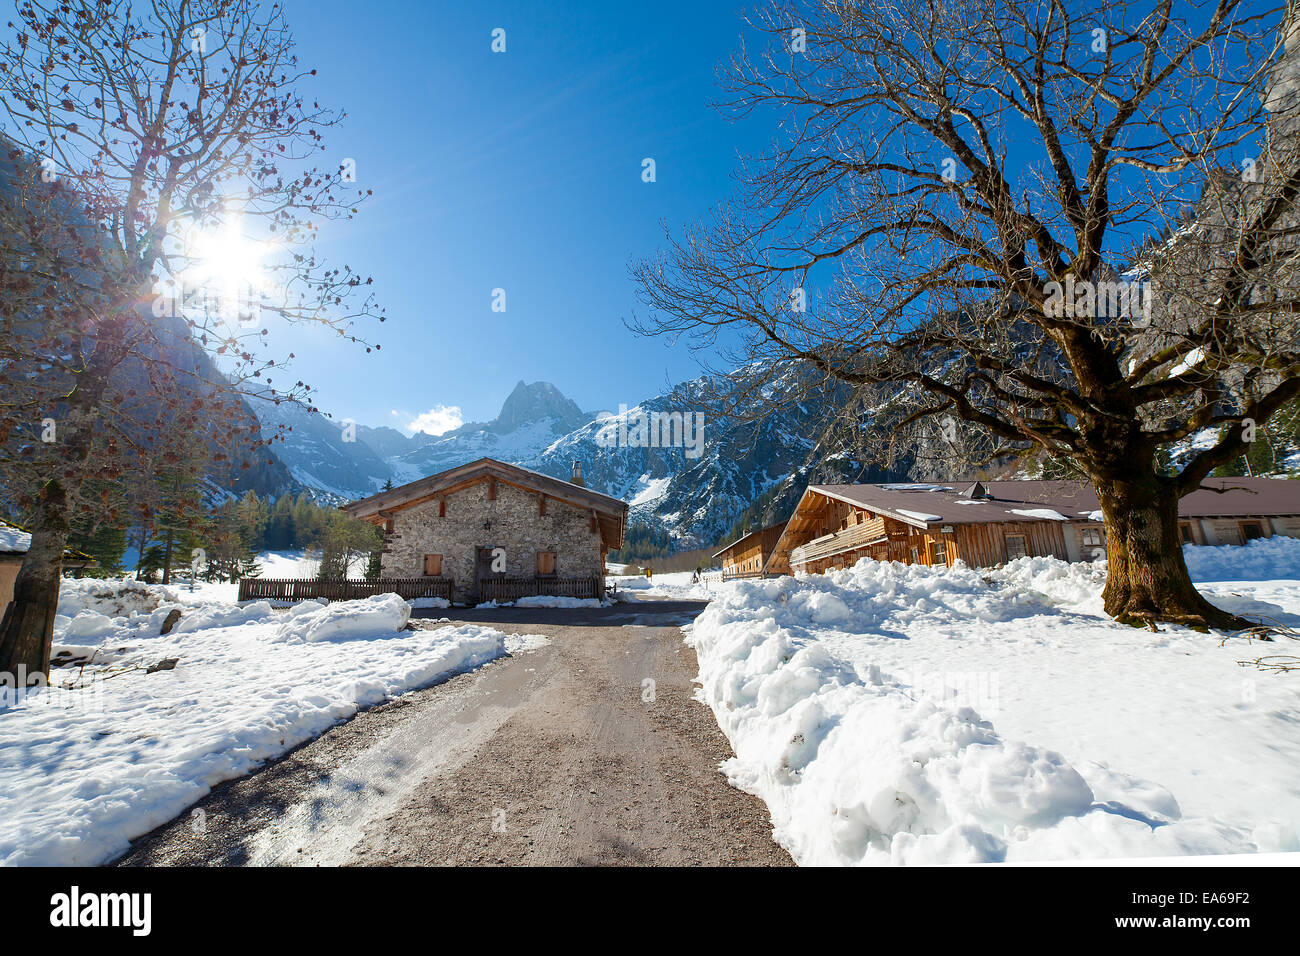 Paesaggio invernale in una valle di montagna con capanne.Tirolo, Austria. Foto Stock